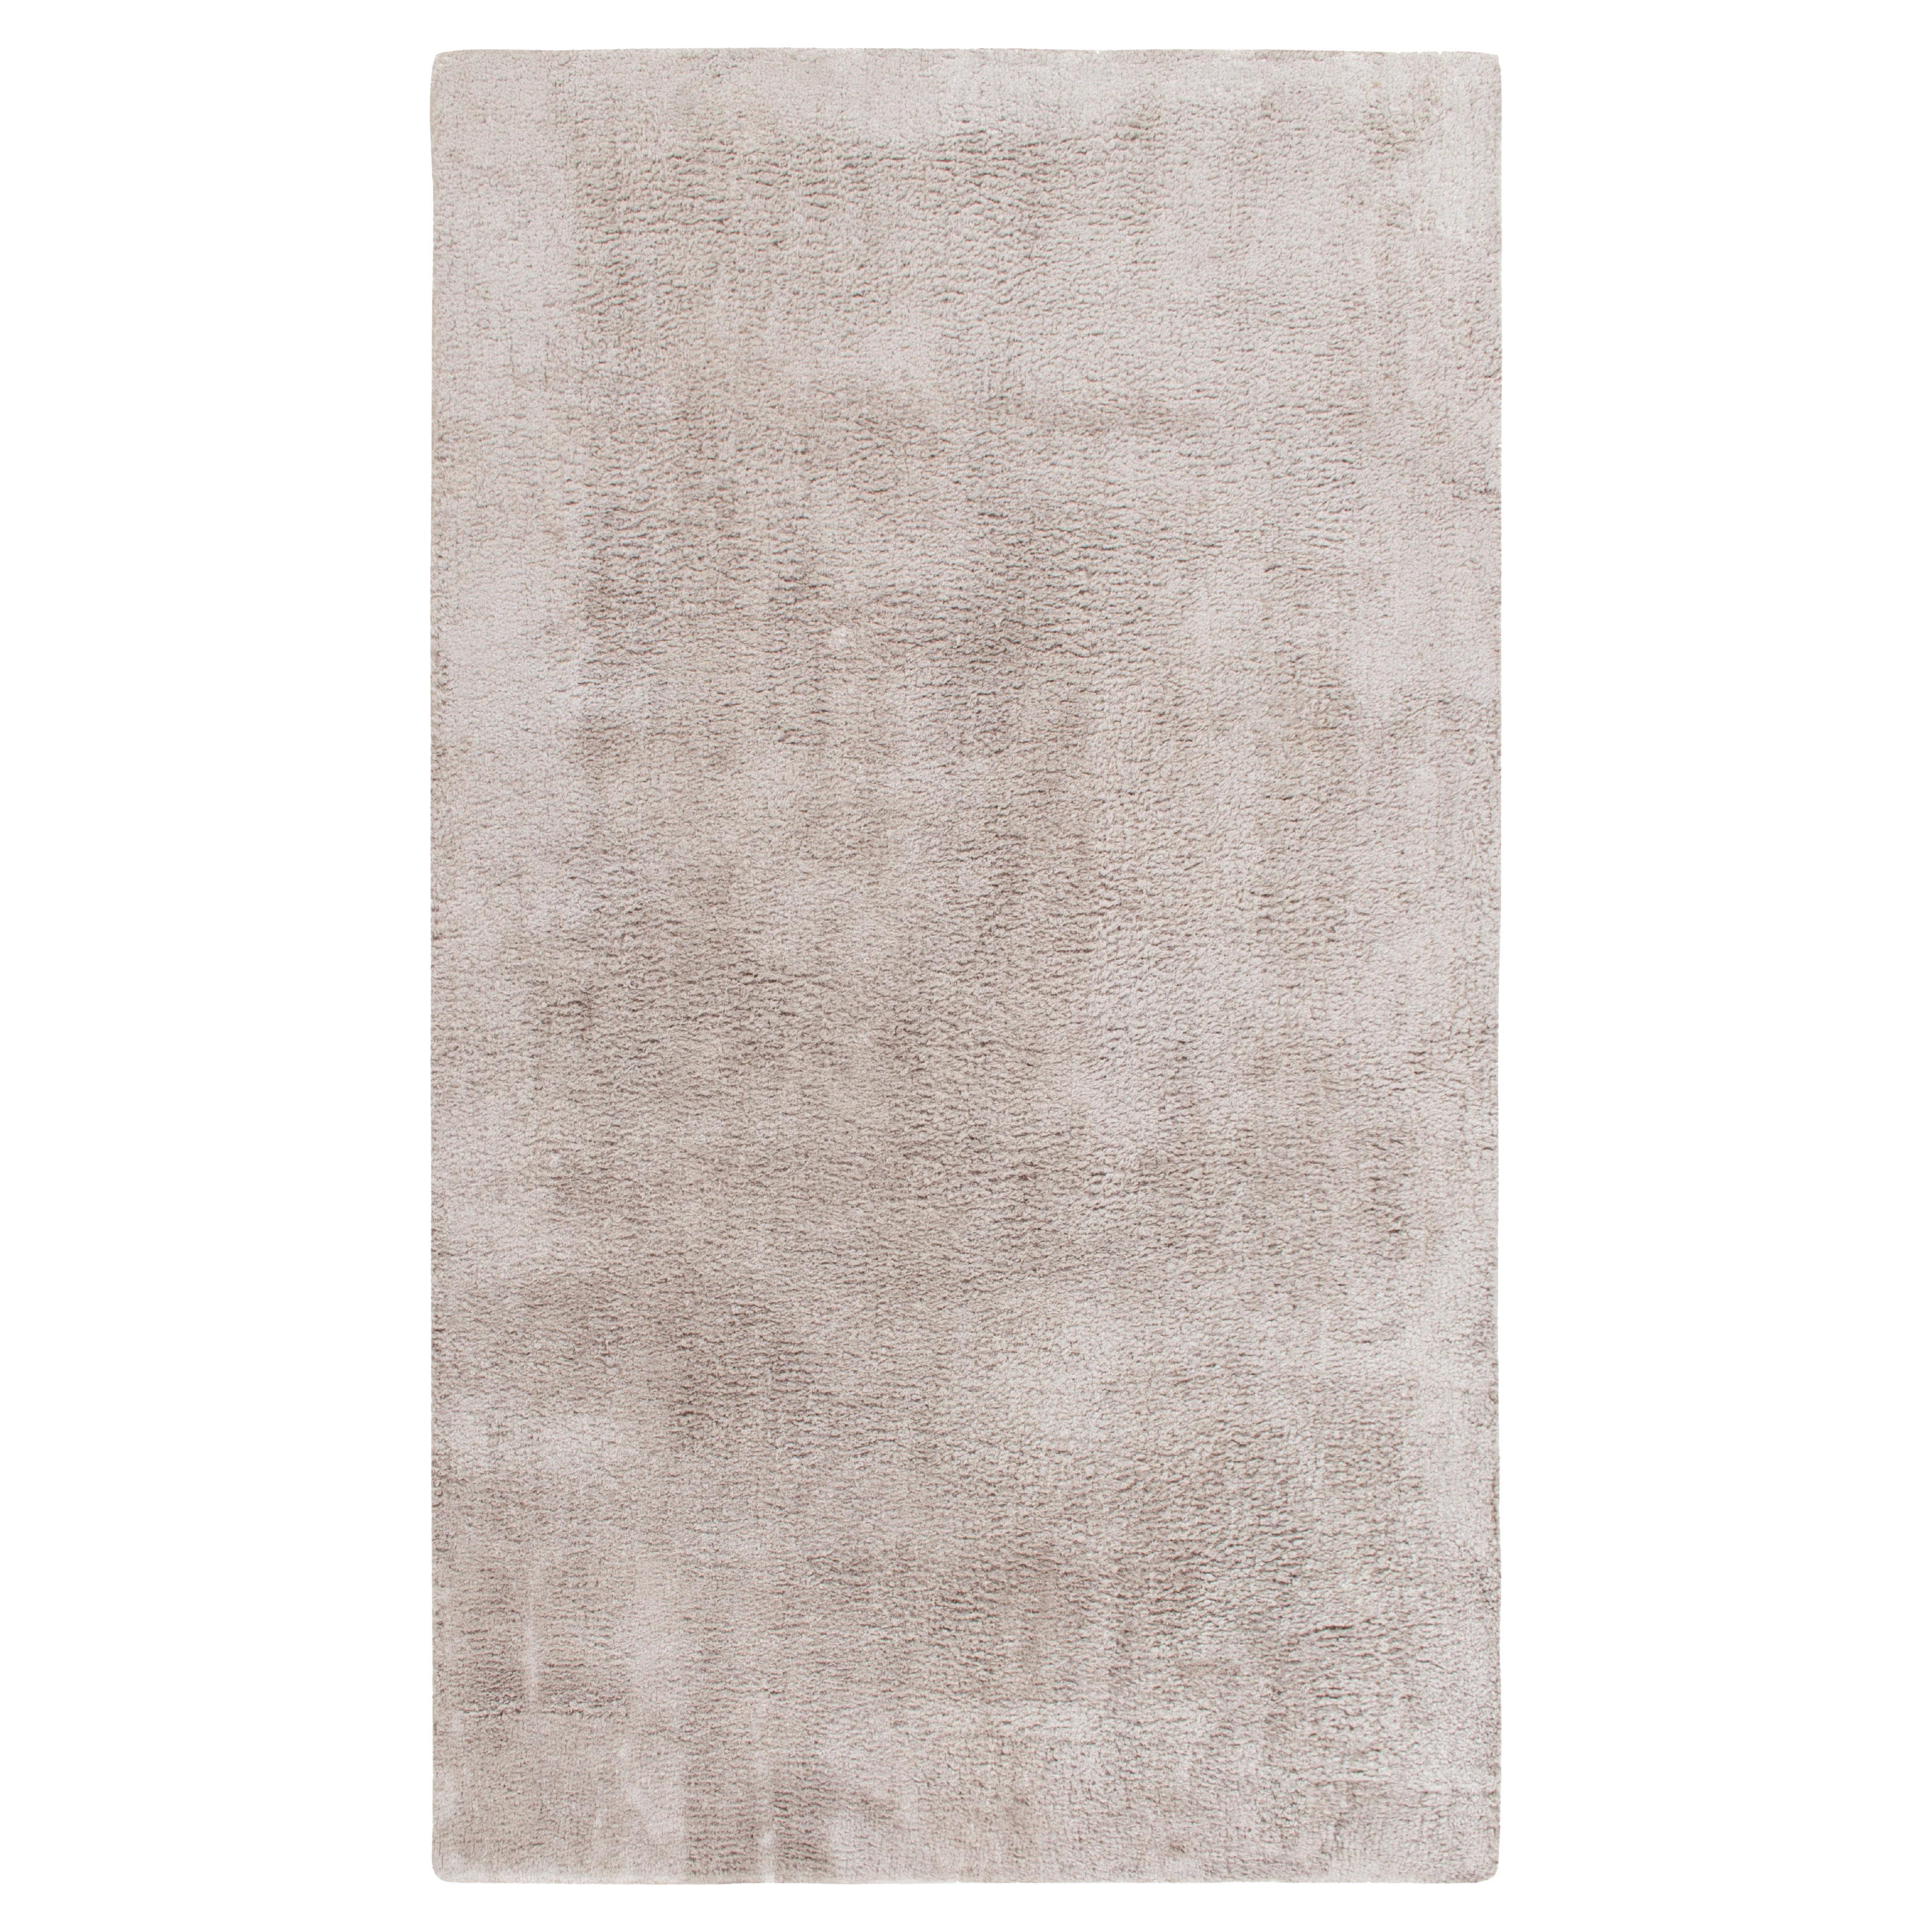 Tapis et tapis contemporain Kilim gris massif à poils longs